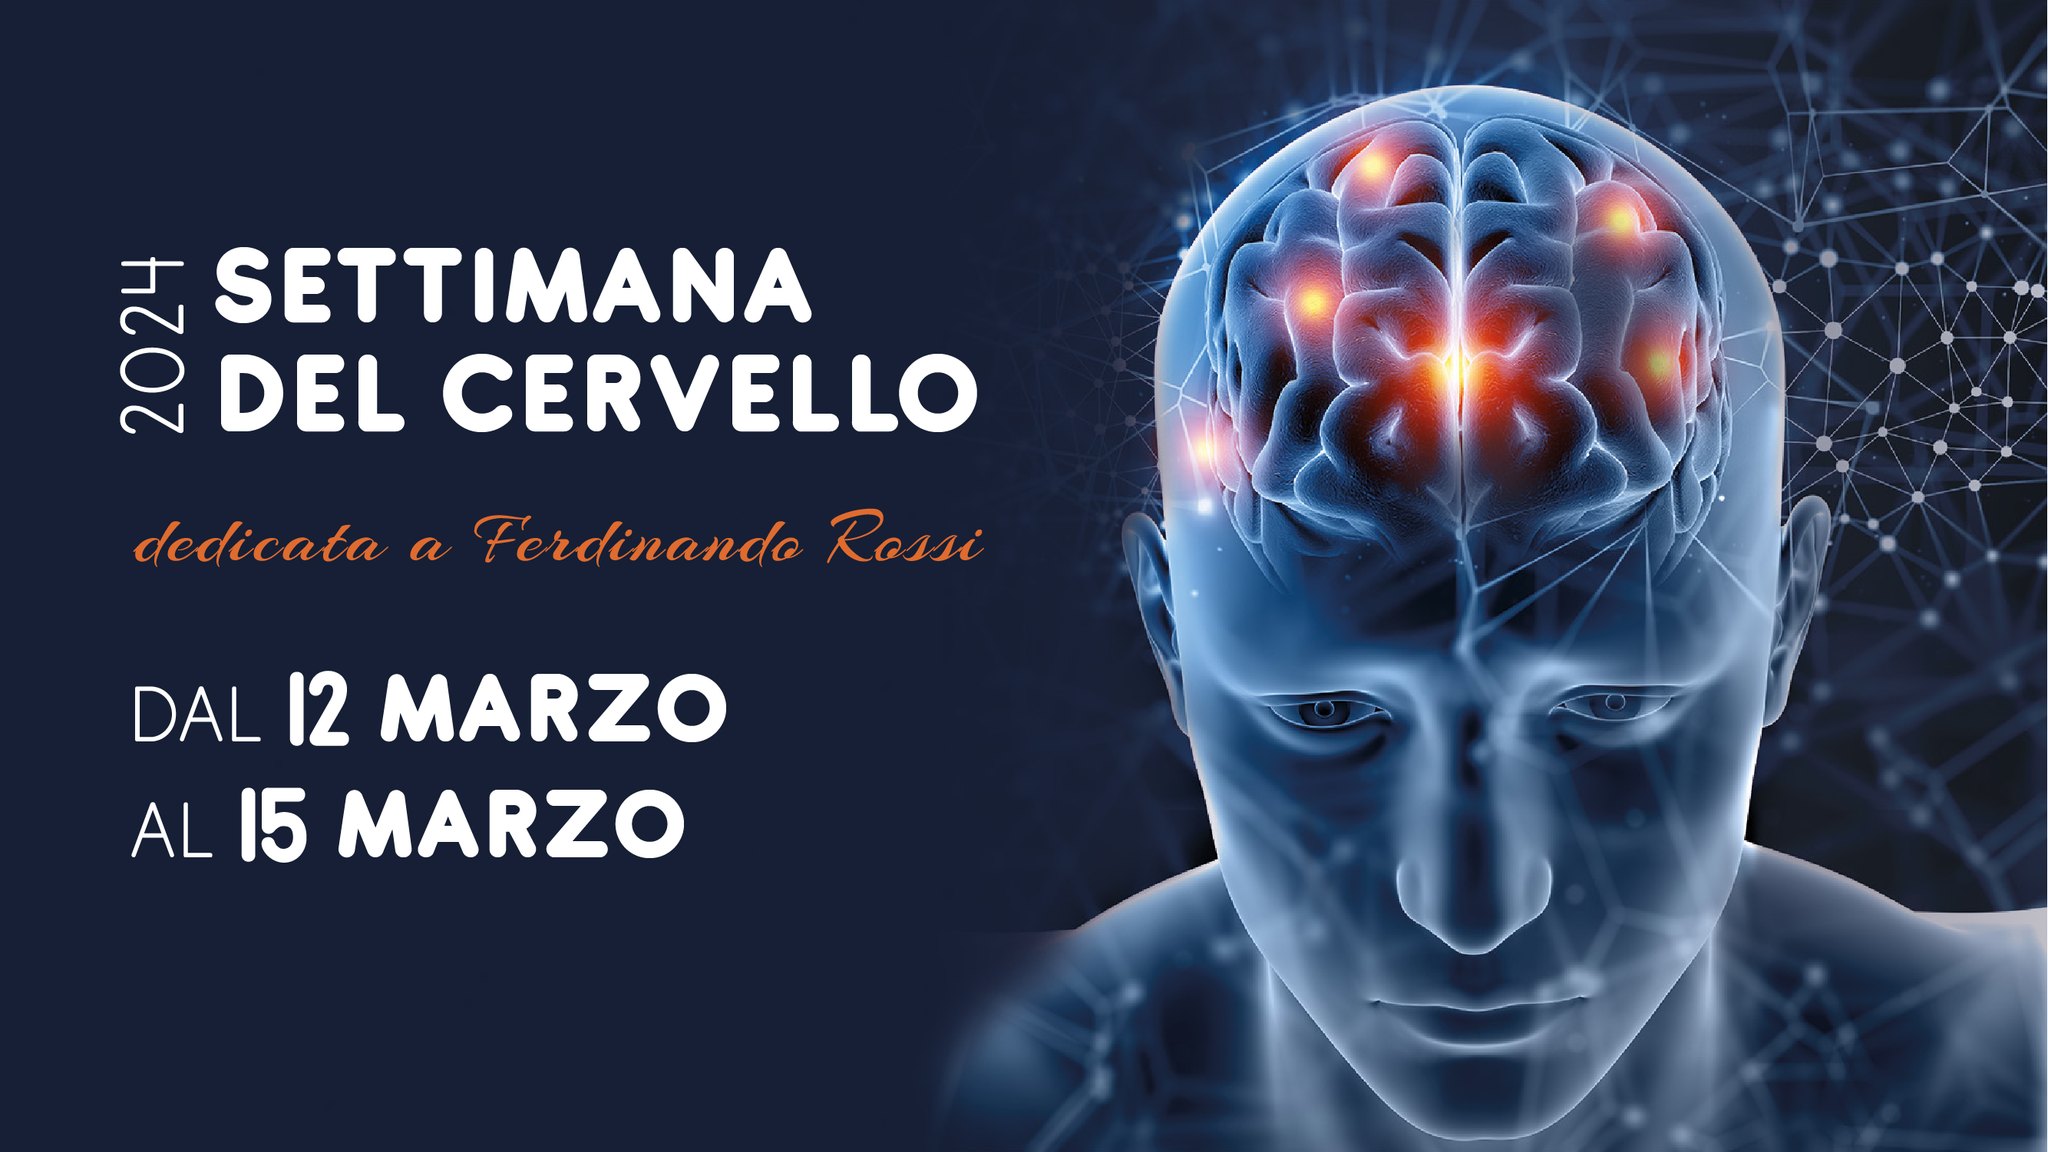 La Settimana del Cervello dedicata a Ferdinando Rossi